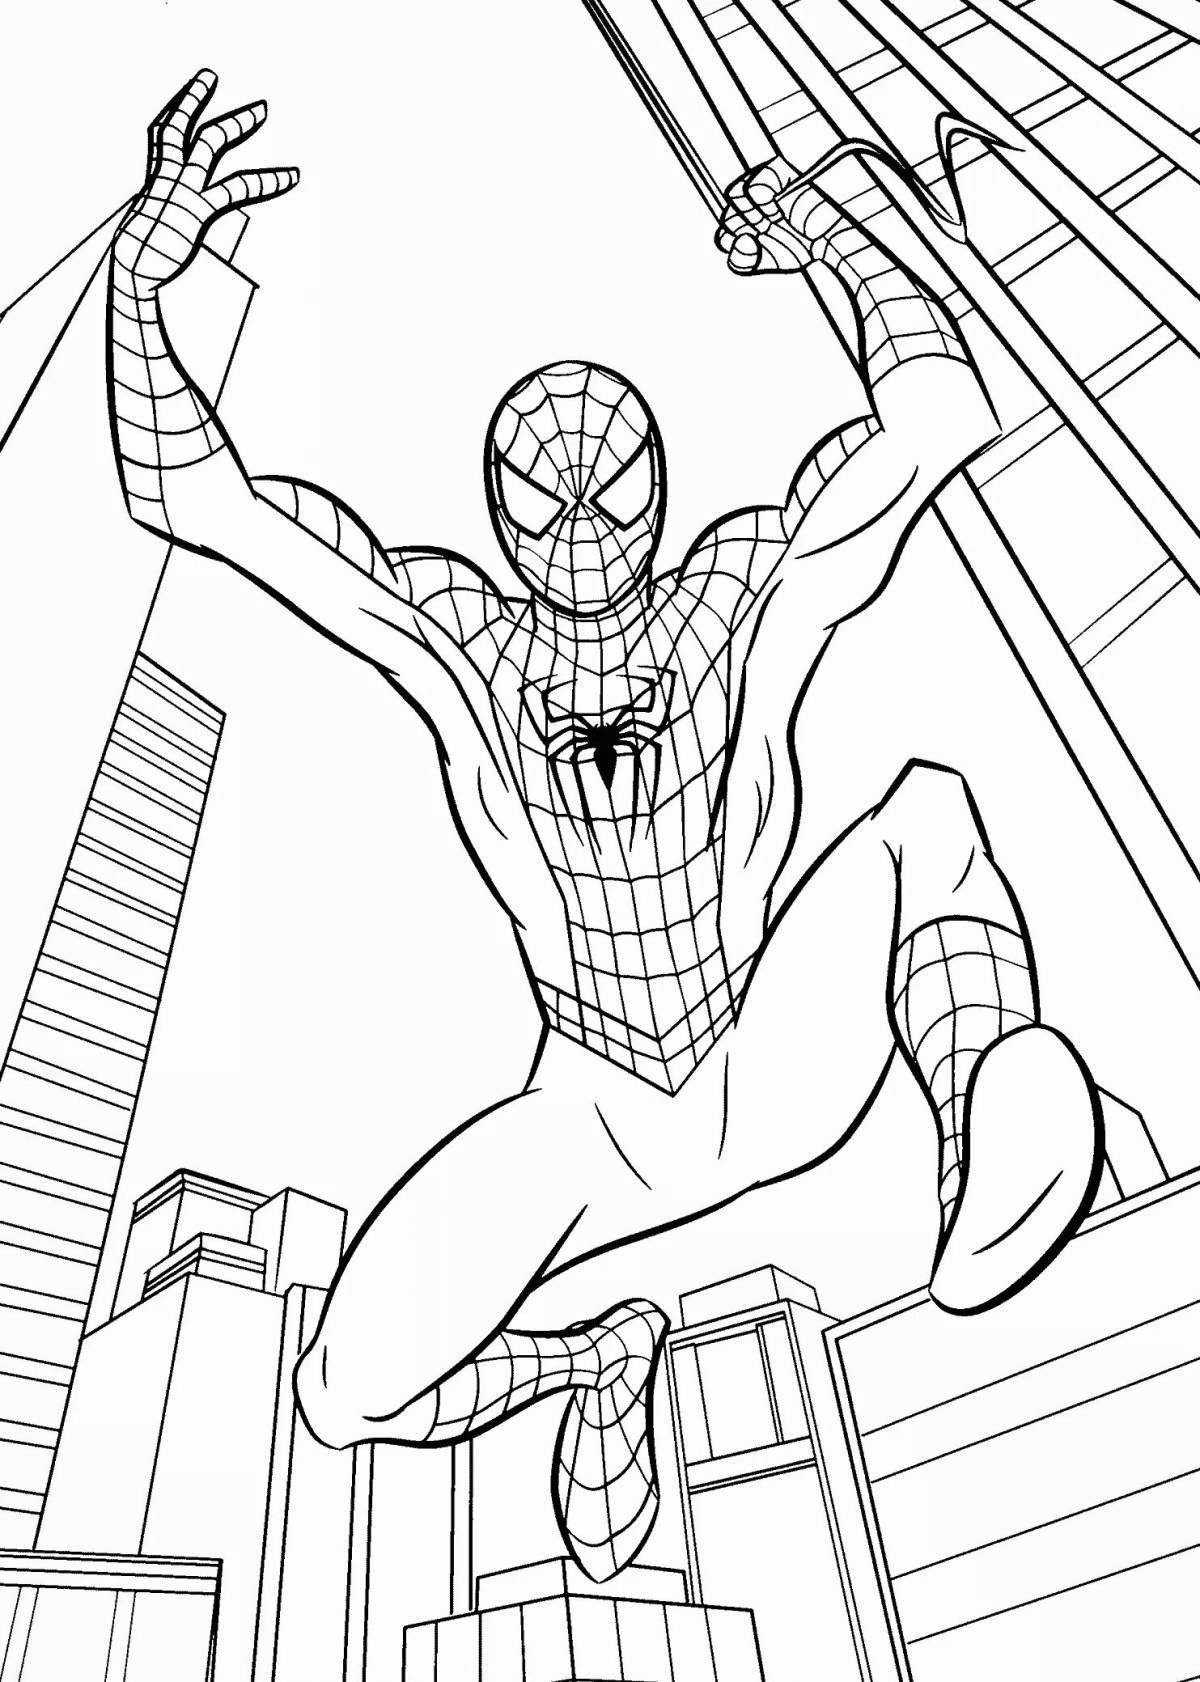 Элегантная раскраска страницы с изображением человека-паука